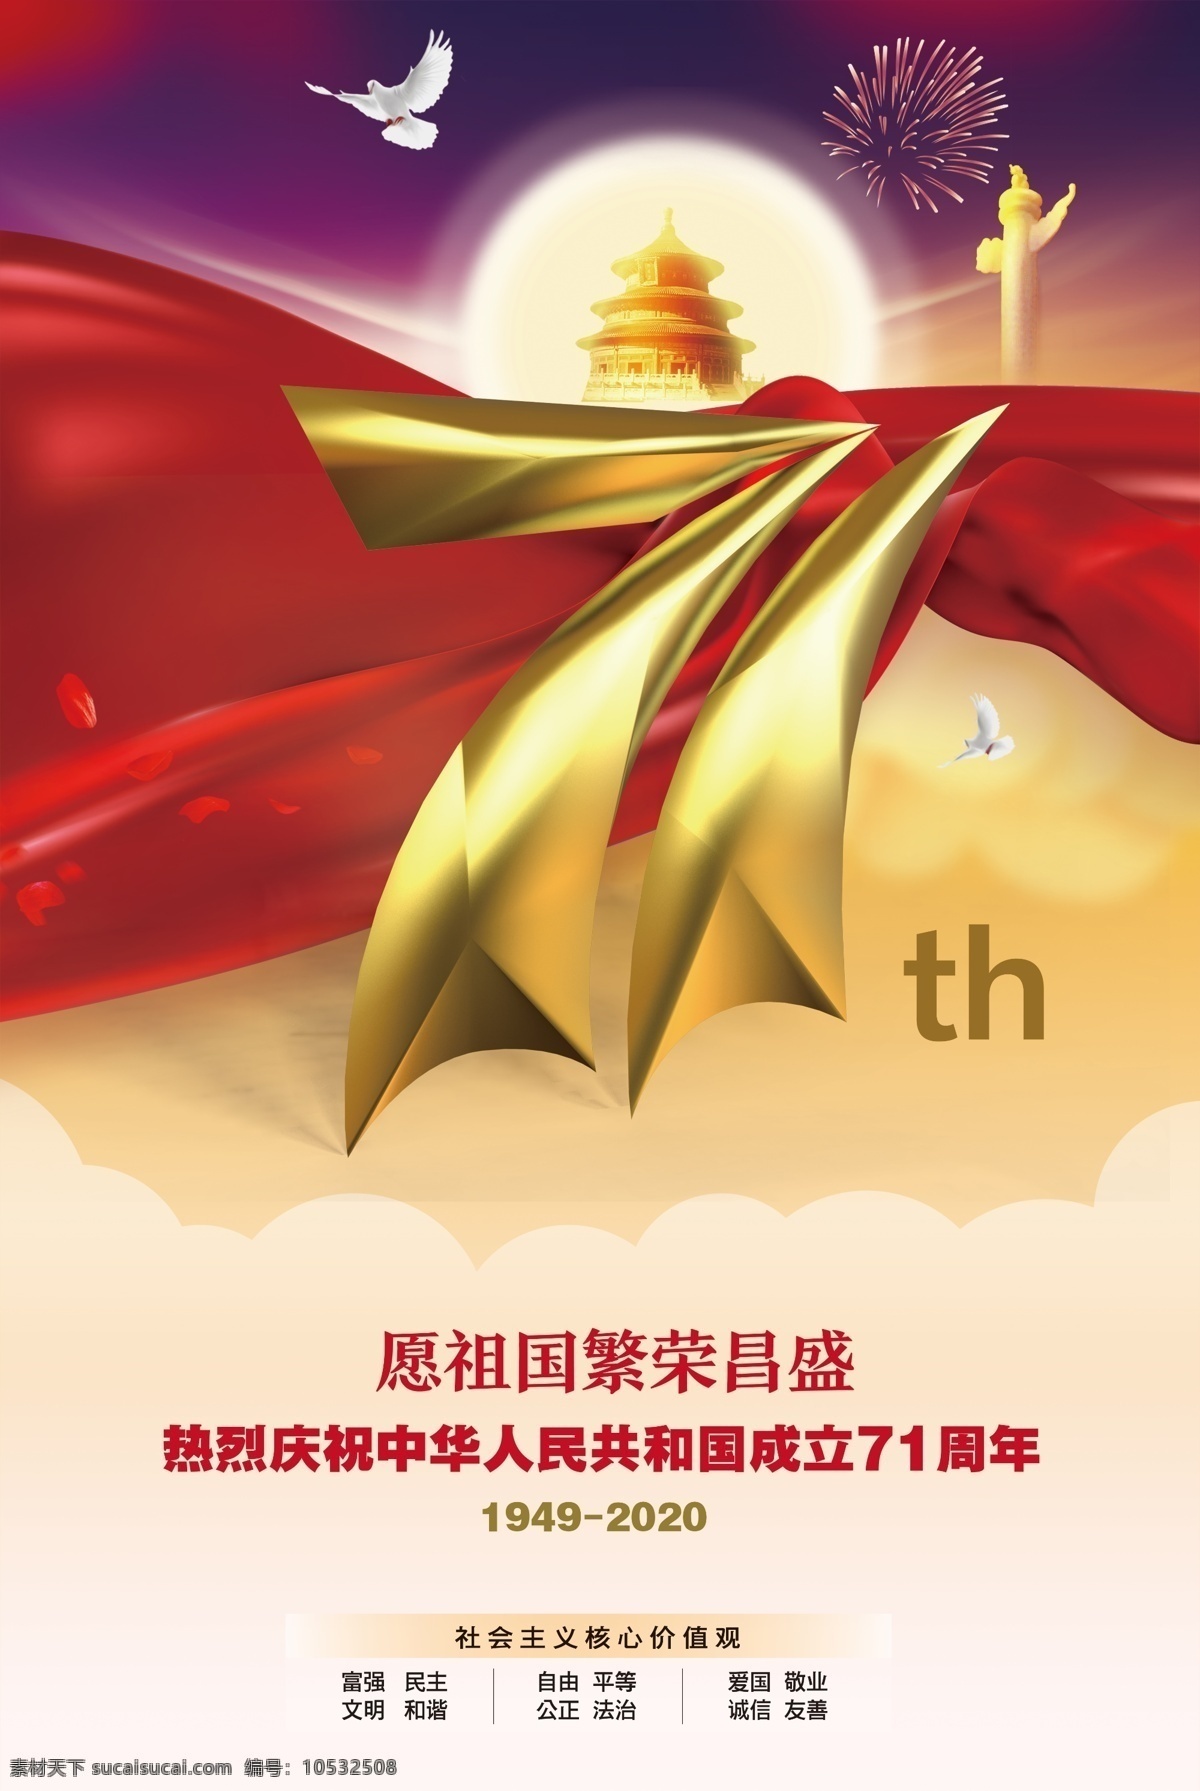 71 周年 国庆 庆典 核心价值观 红绸带 红丝带